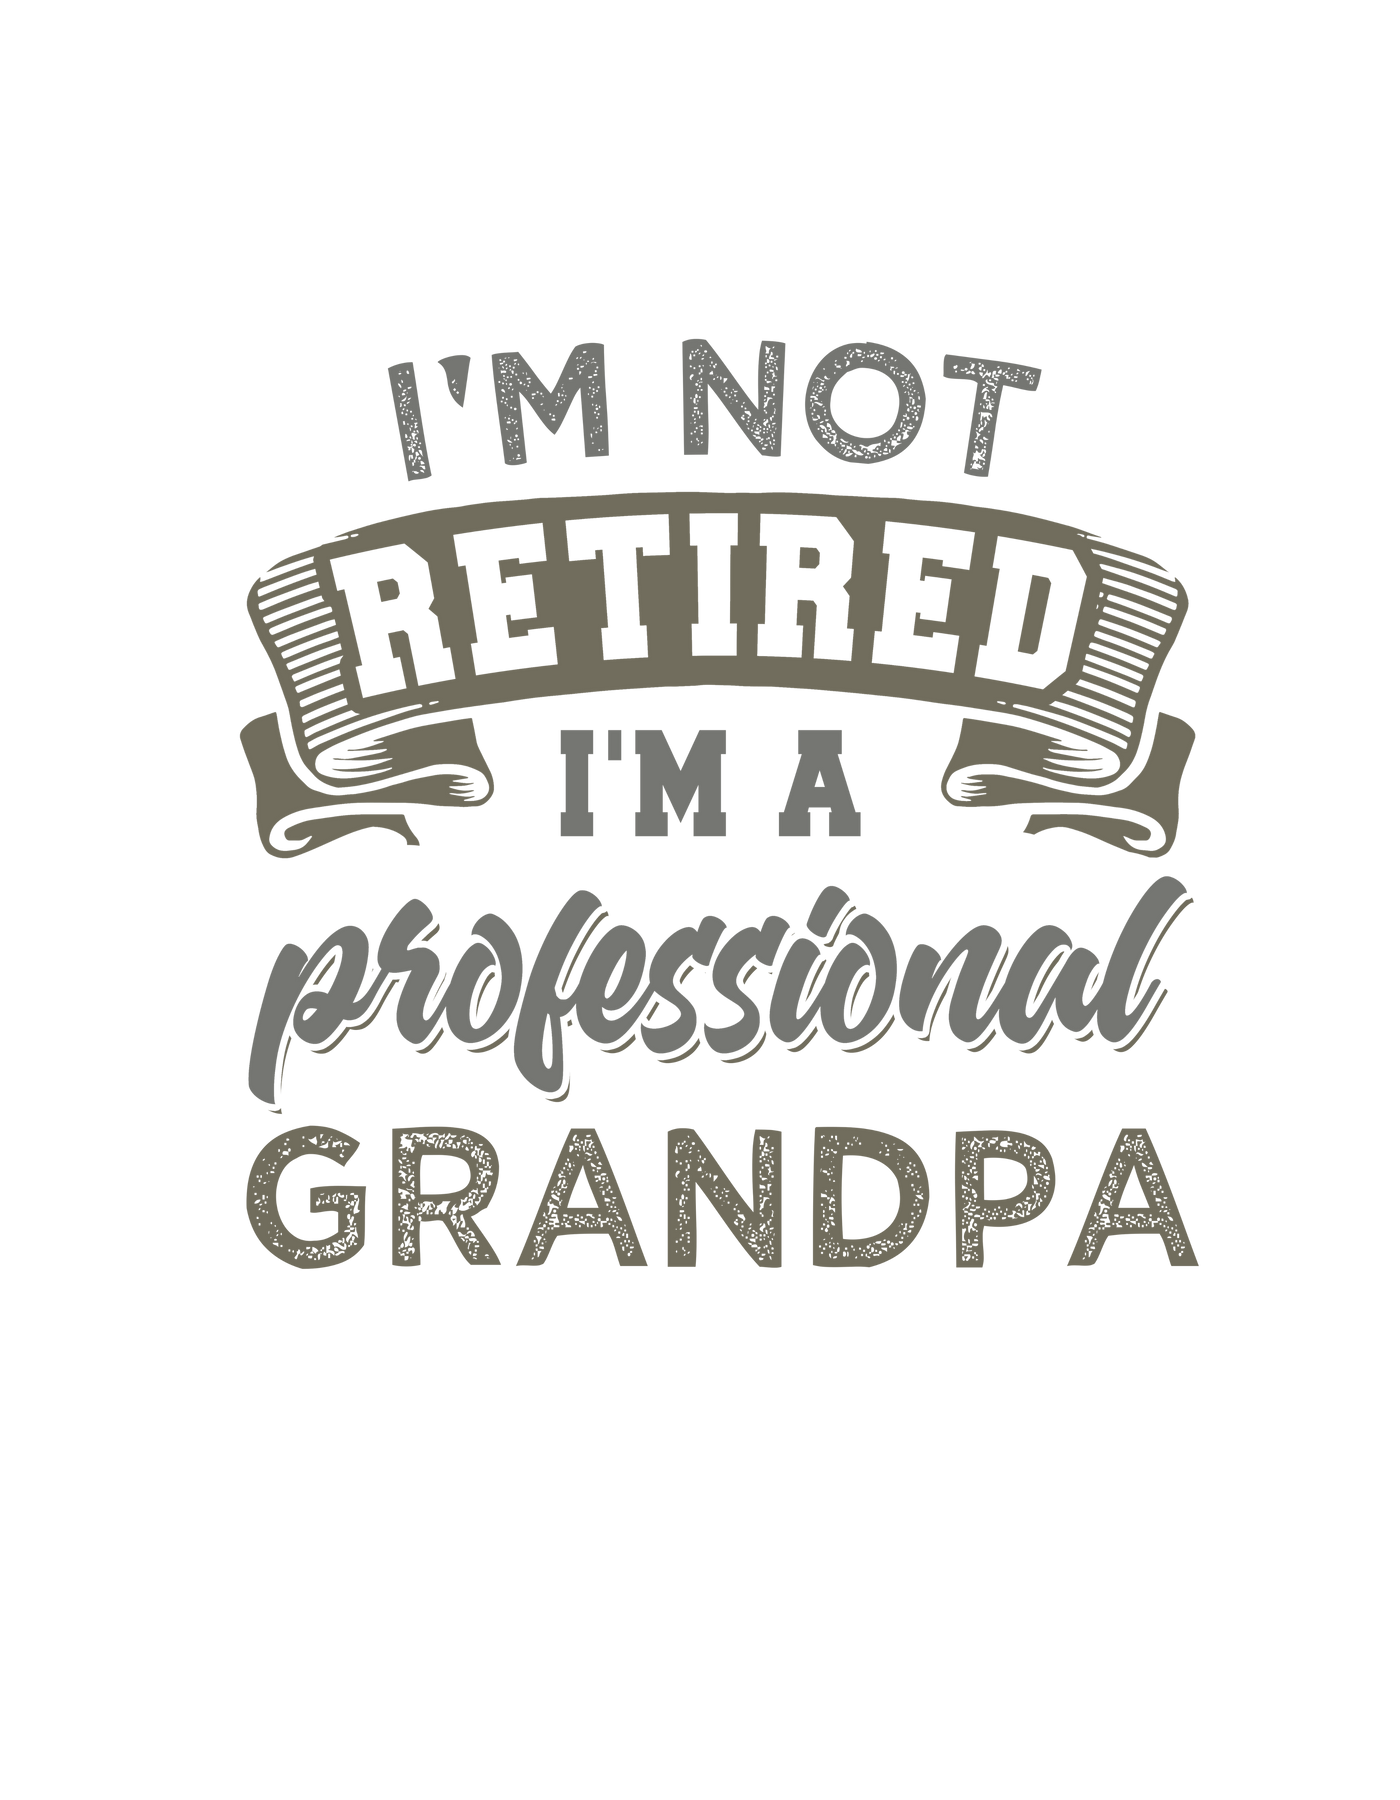 I'm Not Retired I'm a Grandpa Tee